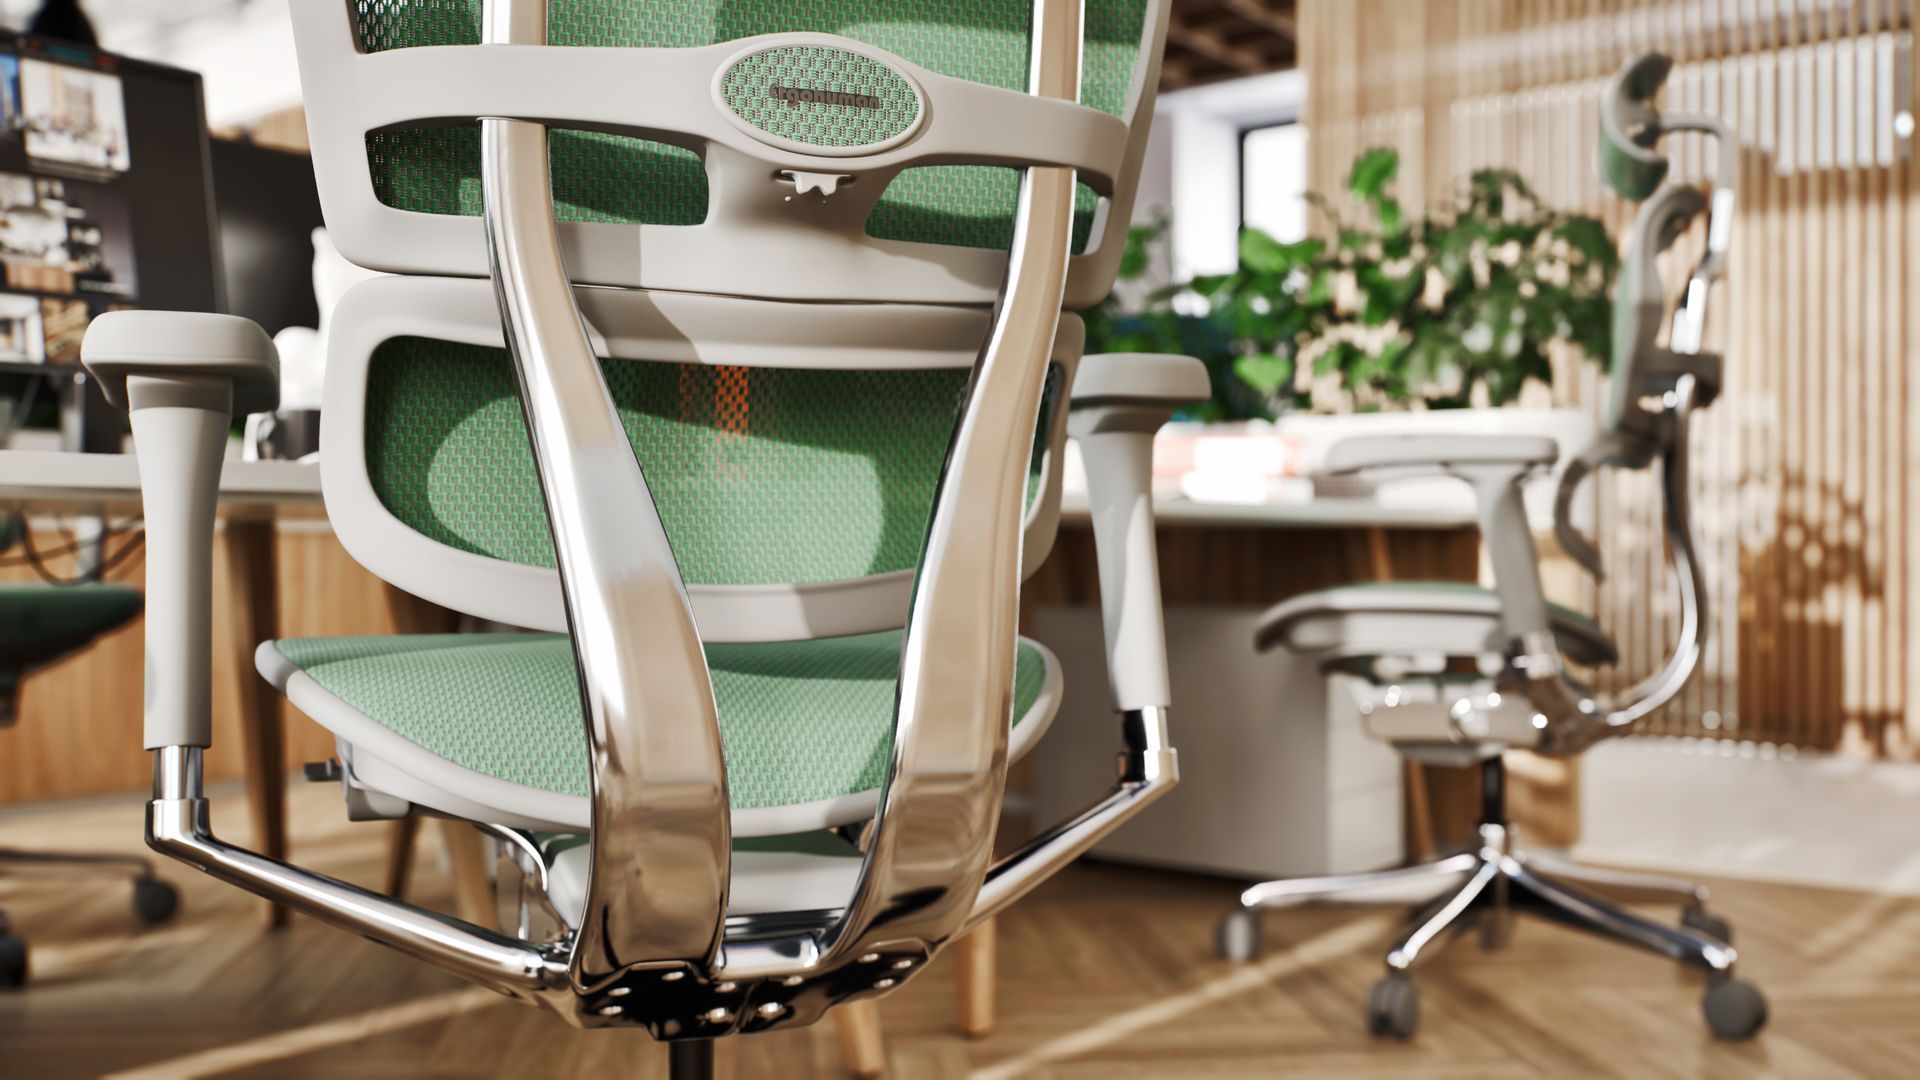 grey frame, green mesh ergohuman office chair at a desk